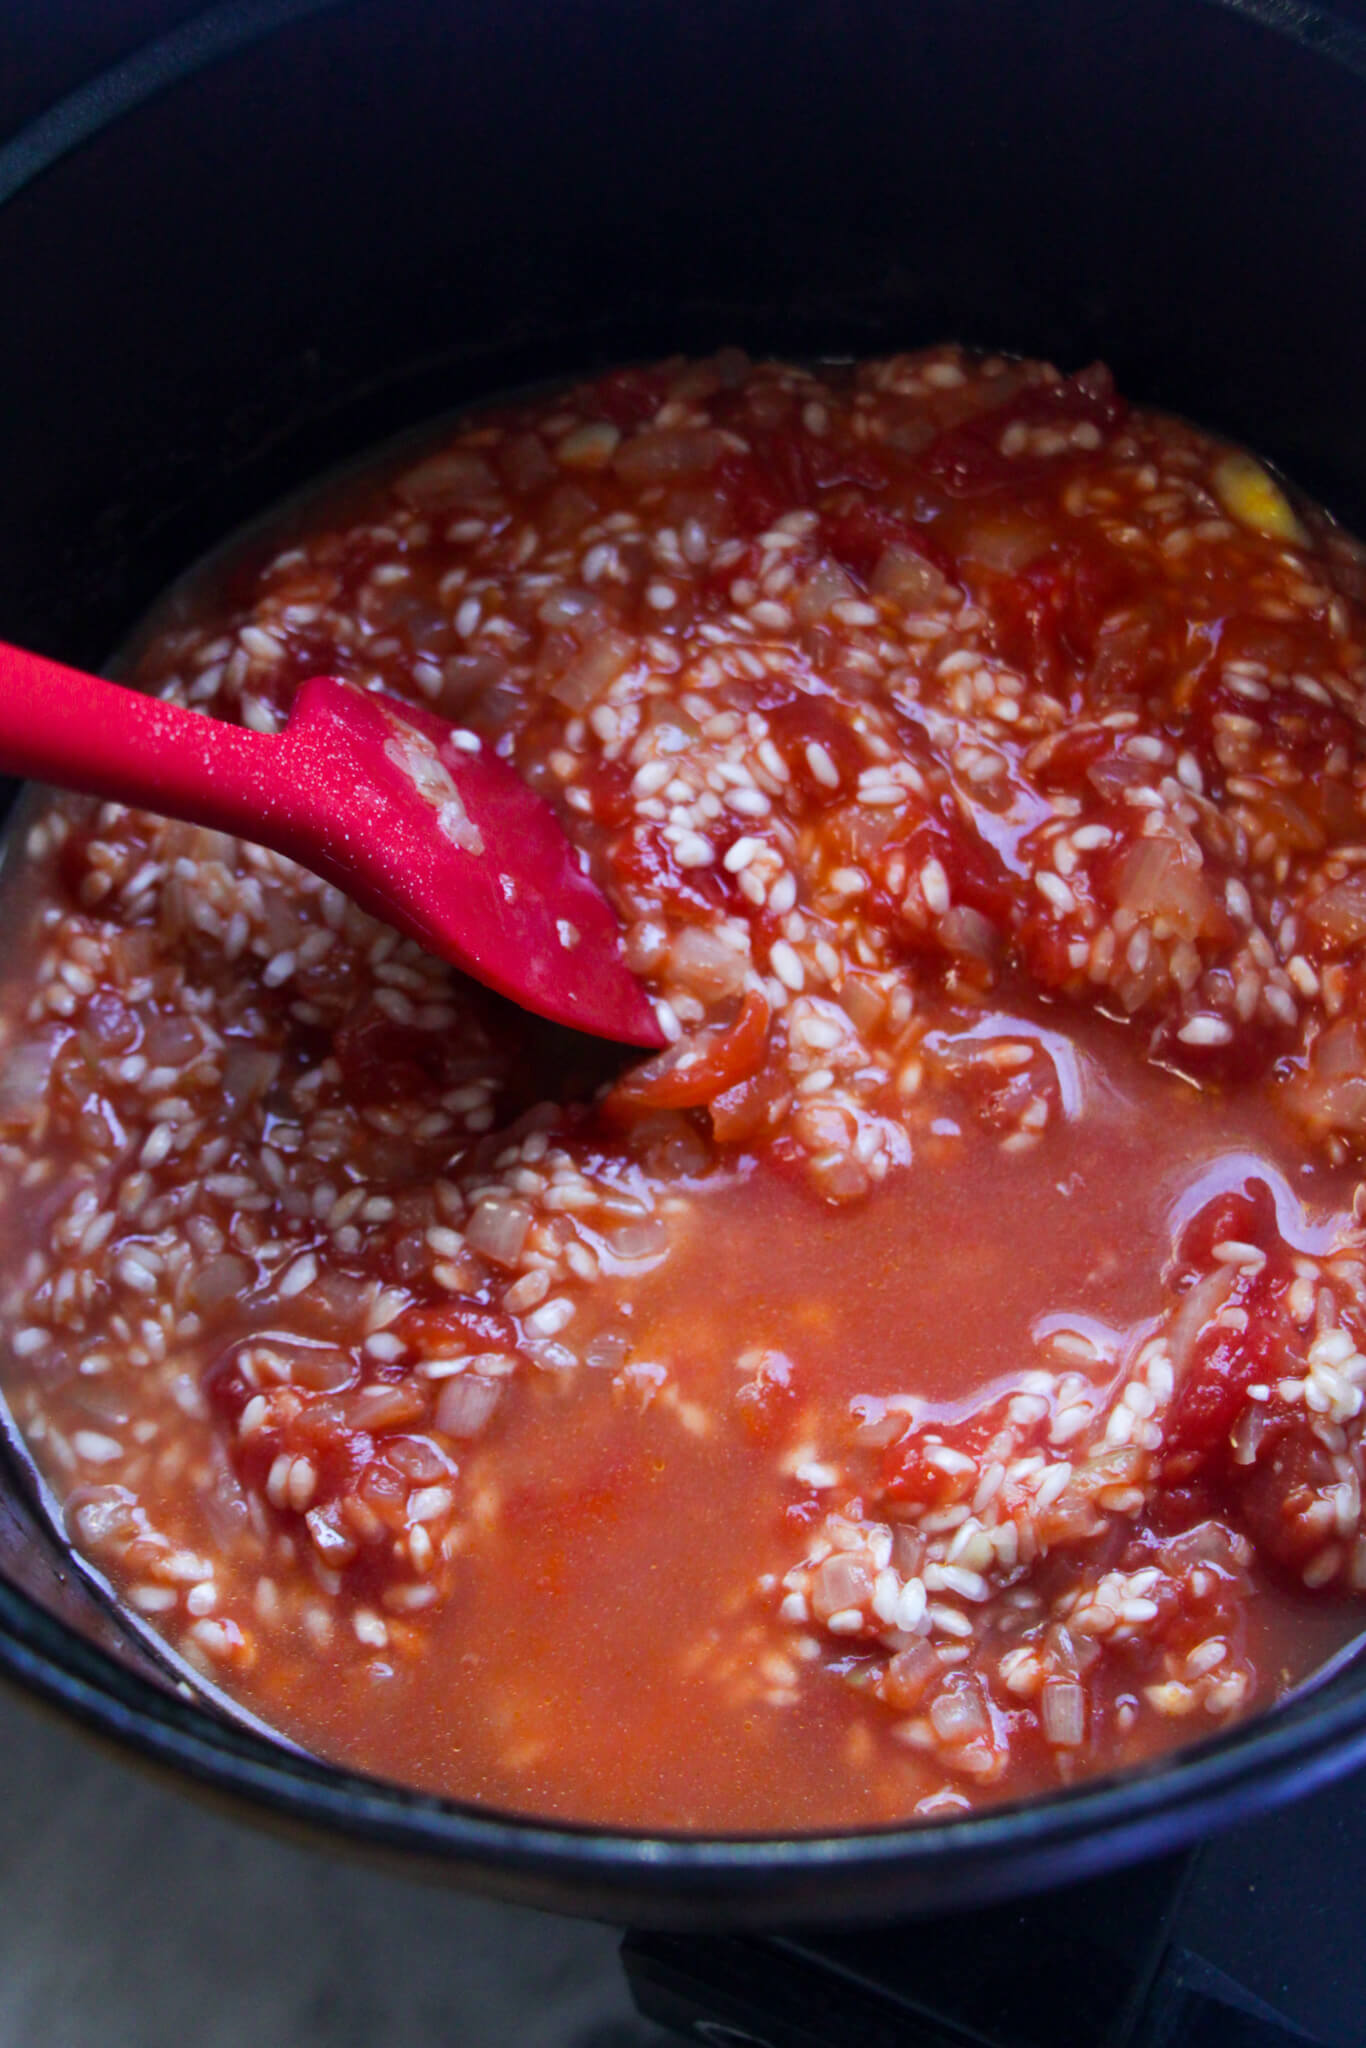 Red spatula stirring stock through tomato risotto in a black pot.